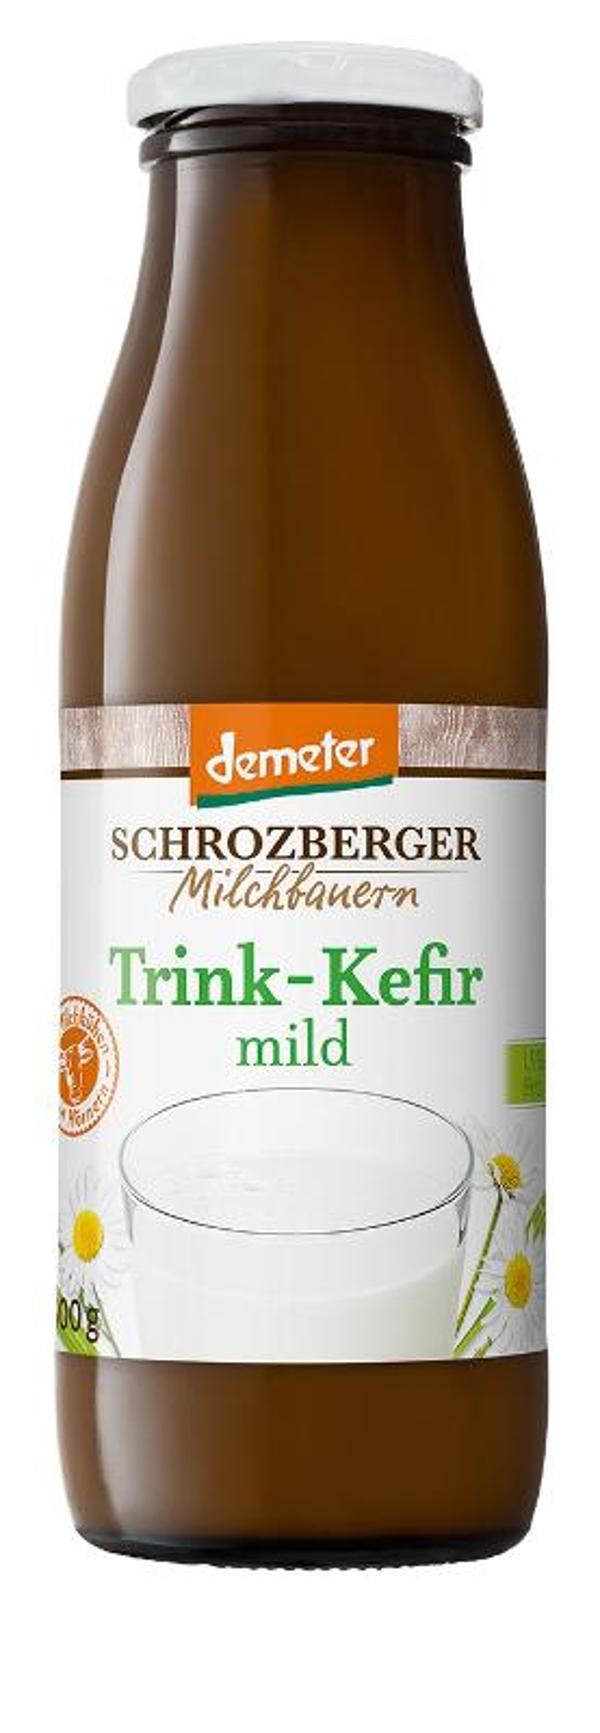 Produktfoto zu VPE Trink-Kefir mild 1,5% 6x500g Schrozberger Milchbauern